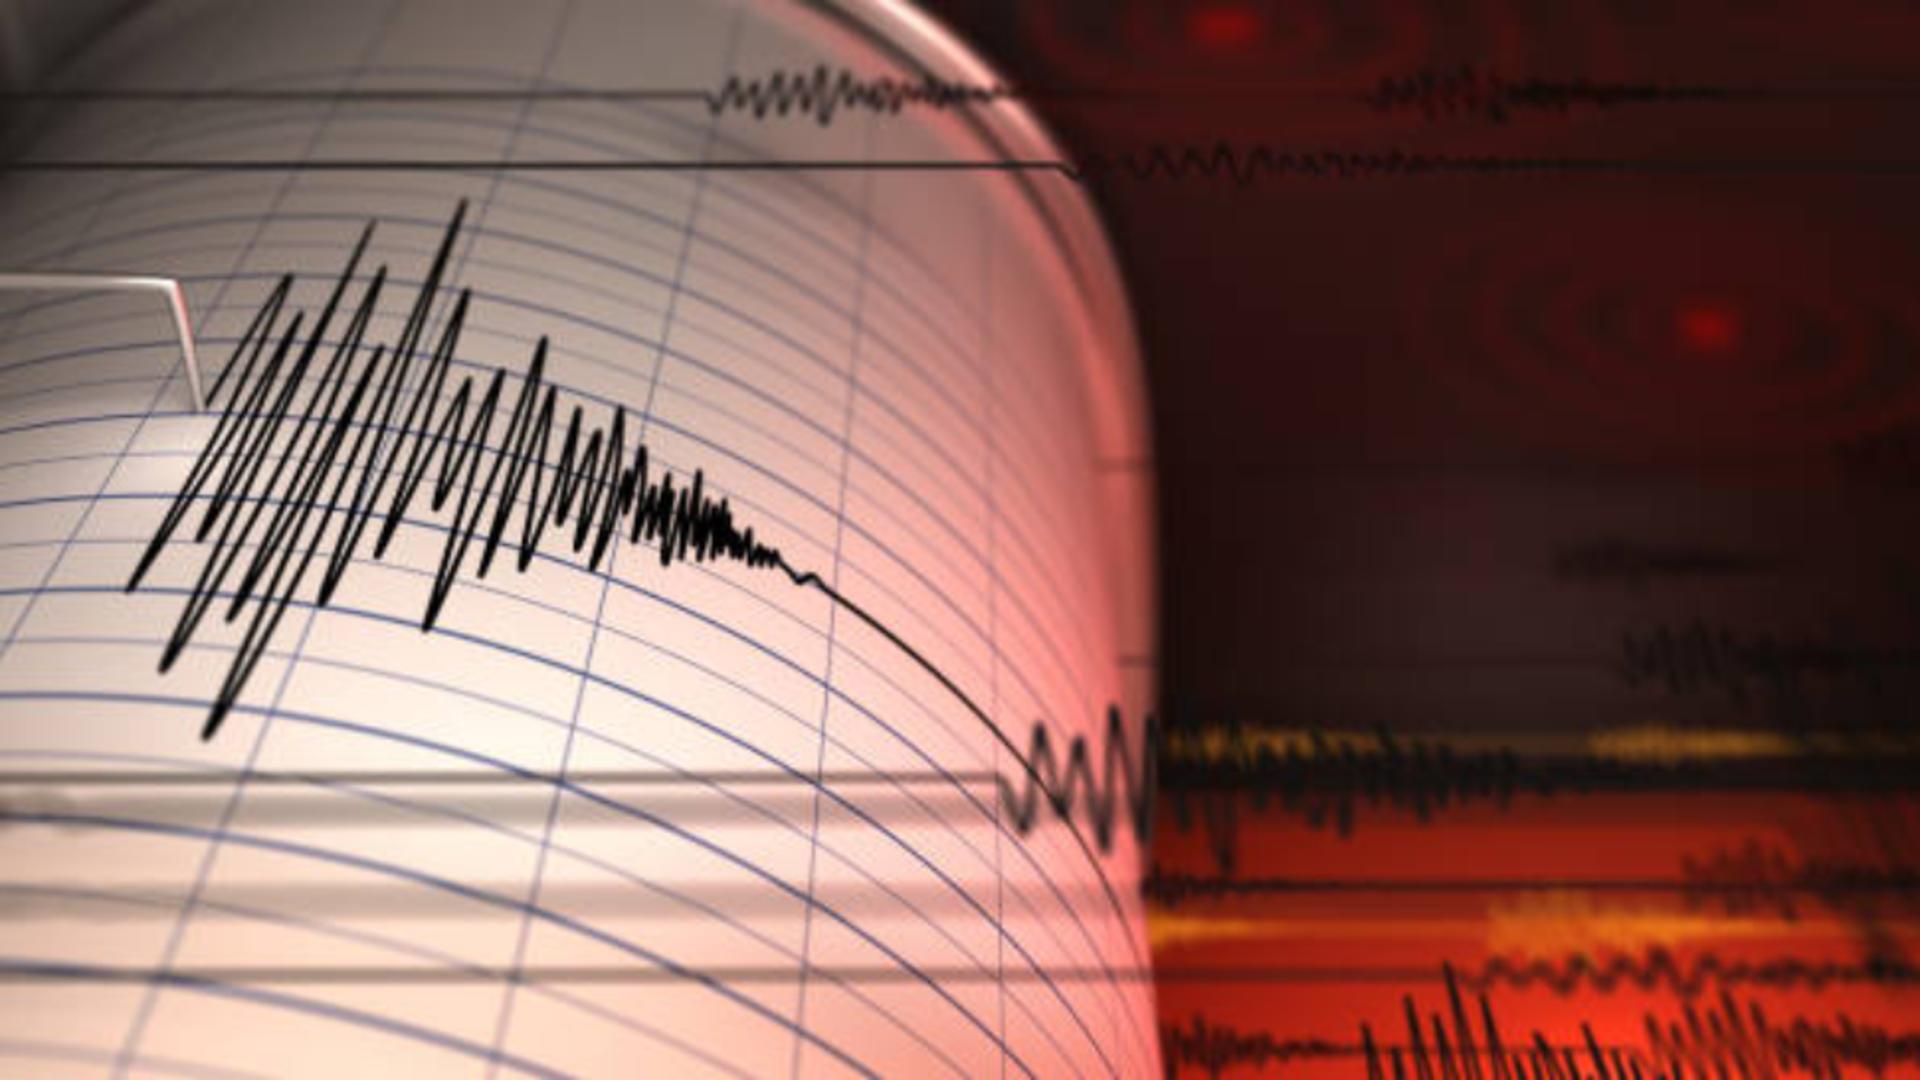 Cutremurele continuă în zona Olteniei. Bilanțul activităților seismice în perioada 13 - 23 februarie se ridică la 960